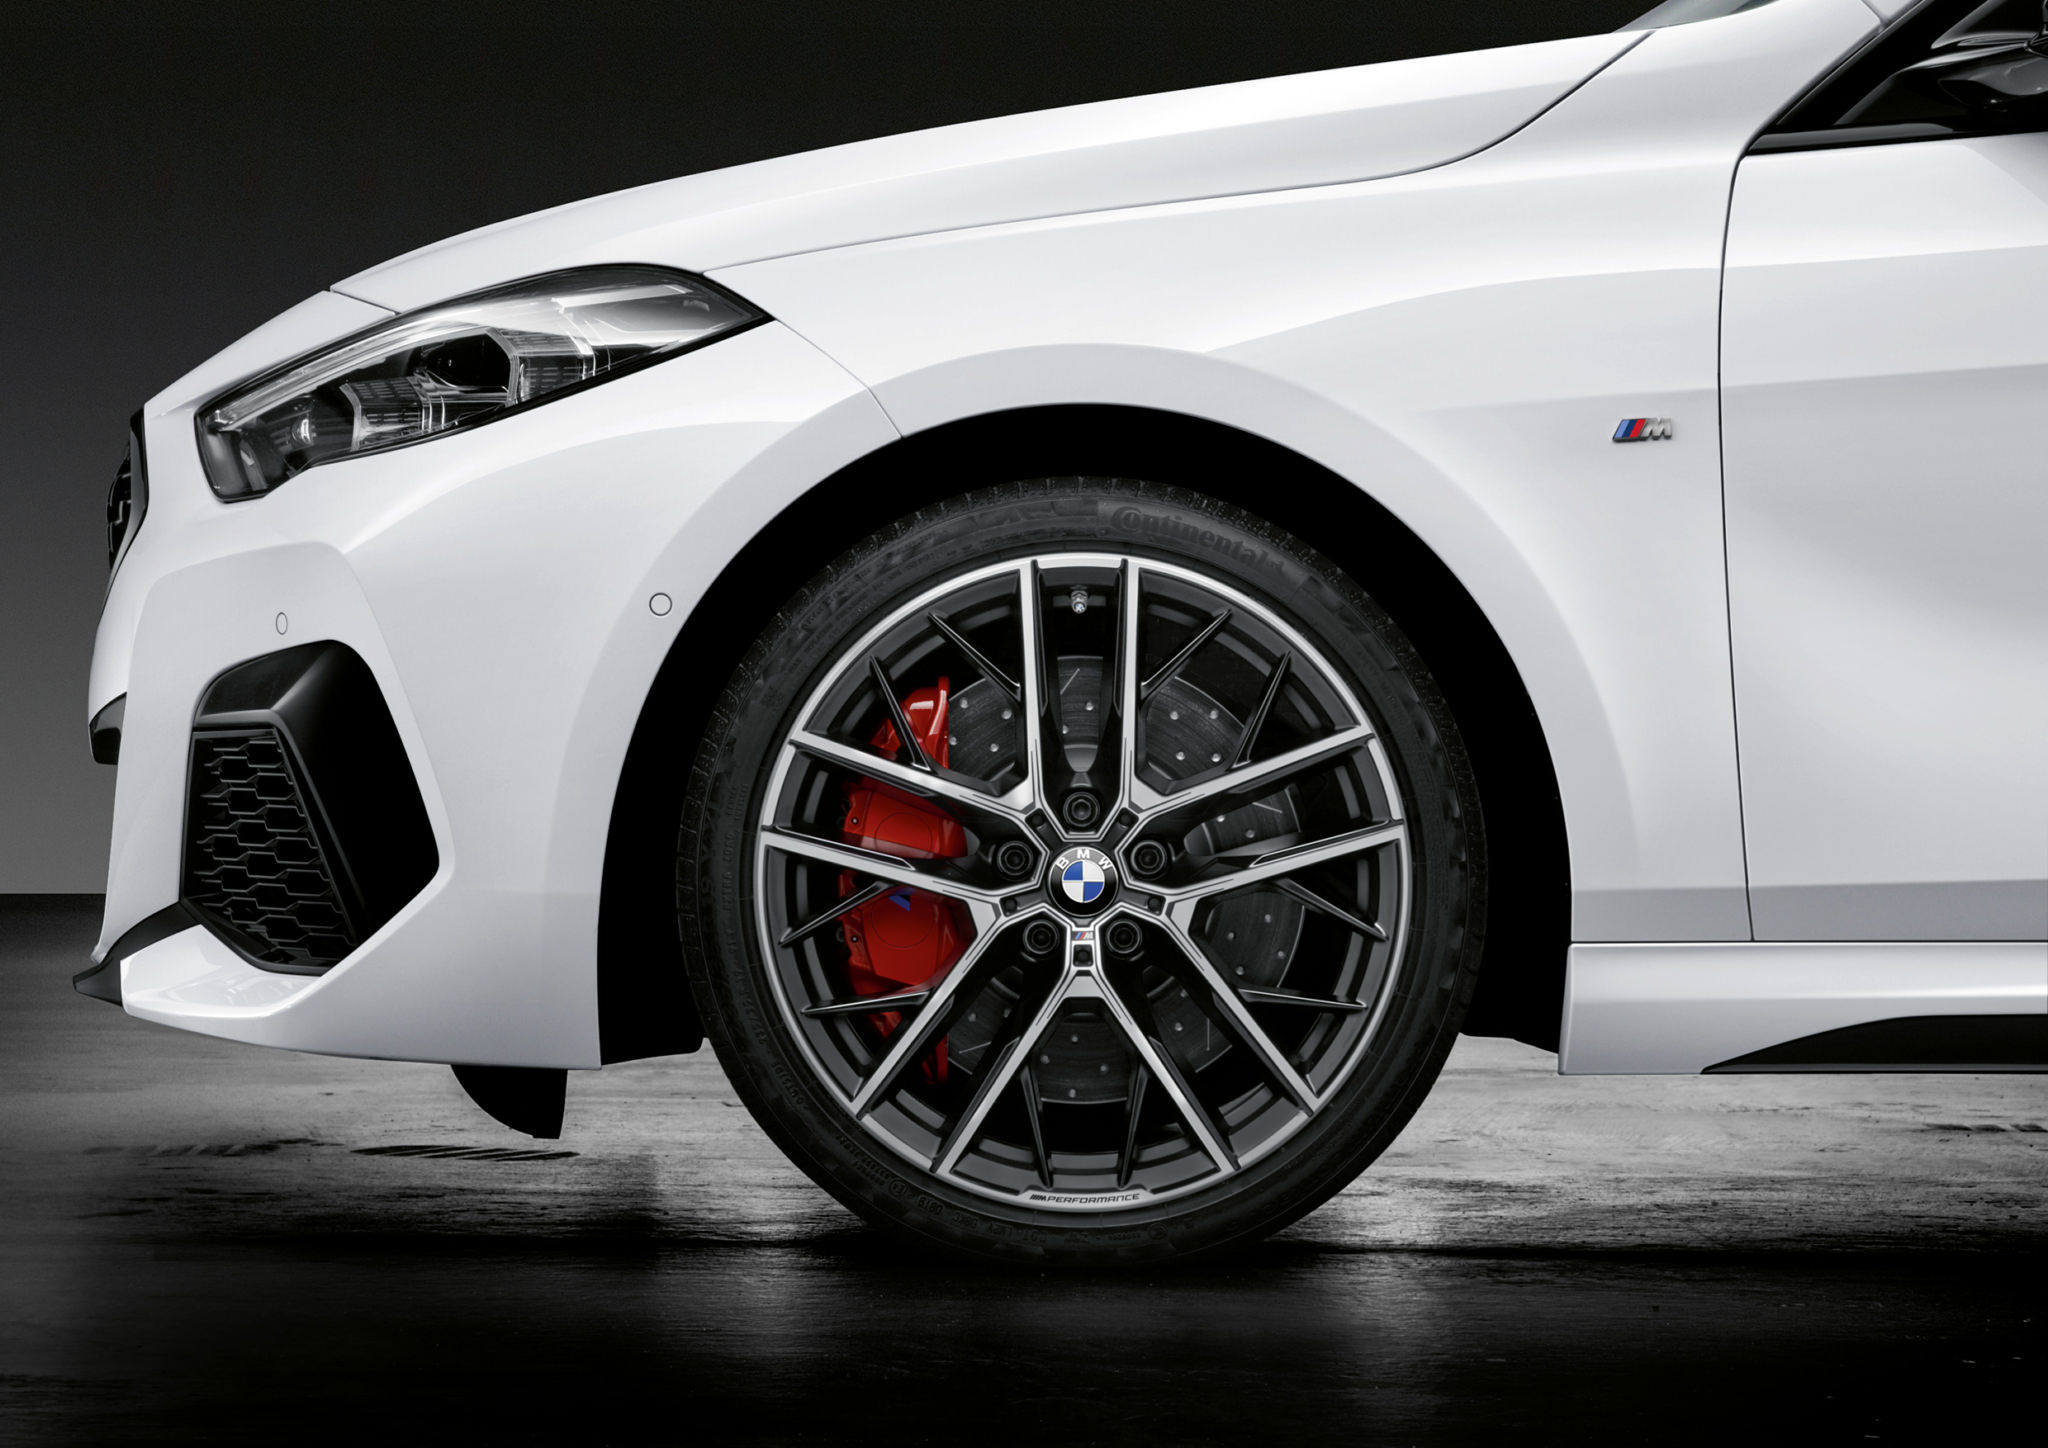 BMW : la nouvelle Série 1 avec les accessoires M Performance